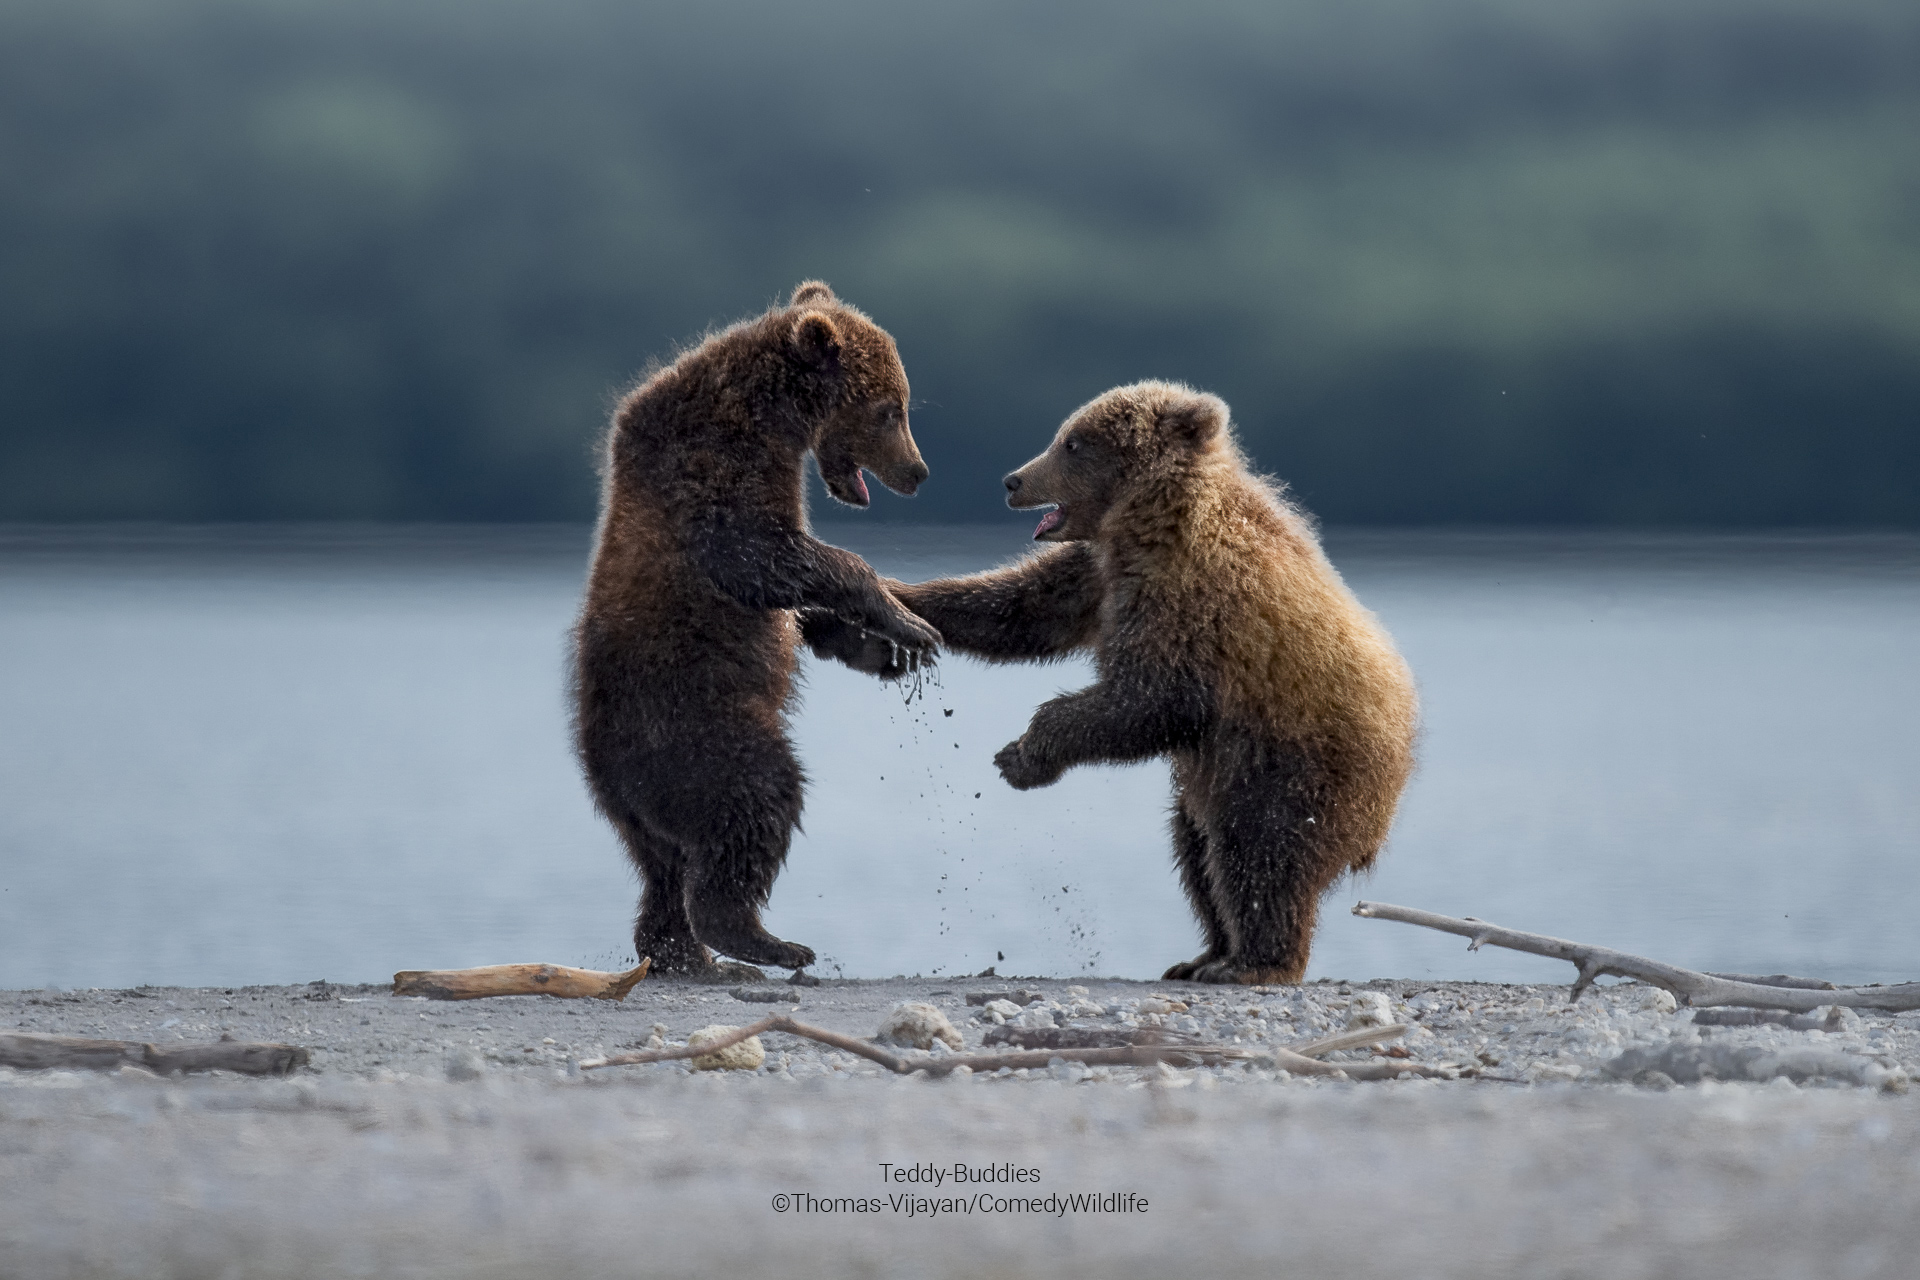 In Russland sind zwei Bären zu sehen, die ihre Pfoten schütteln